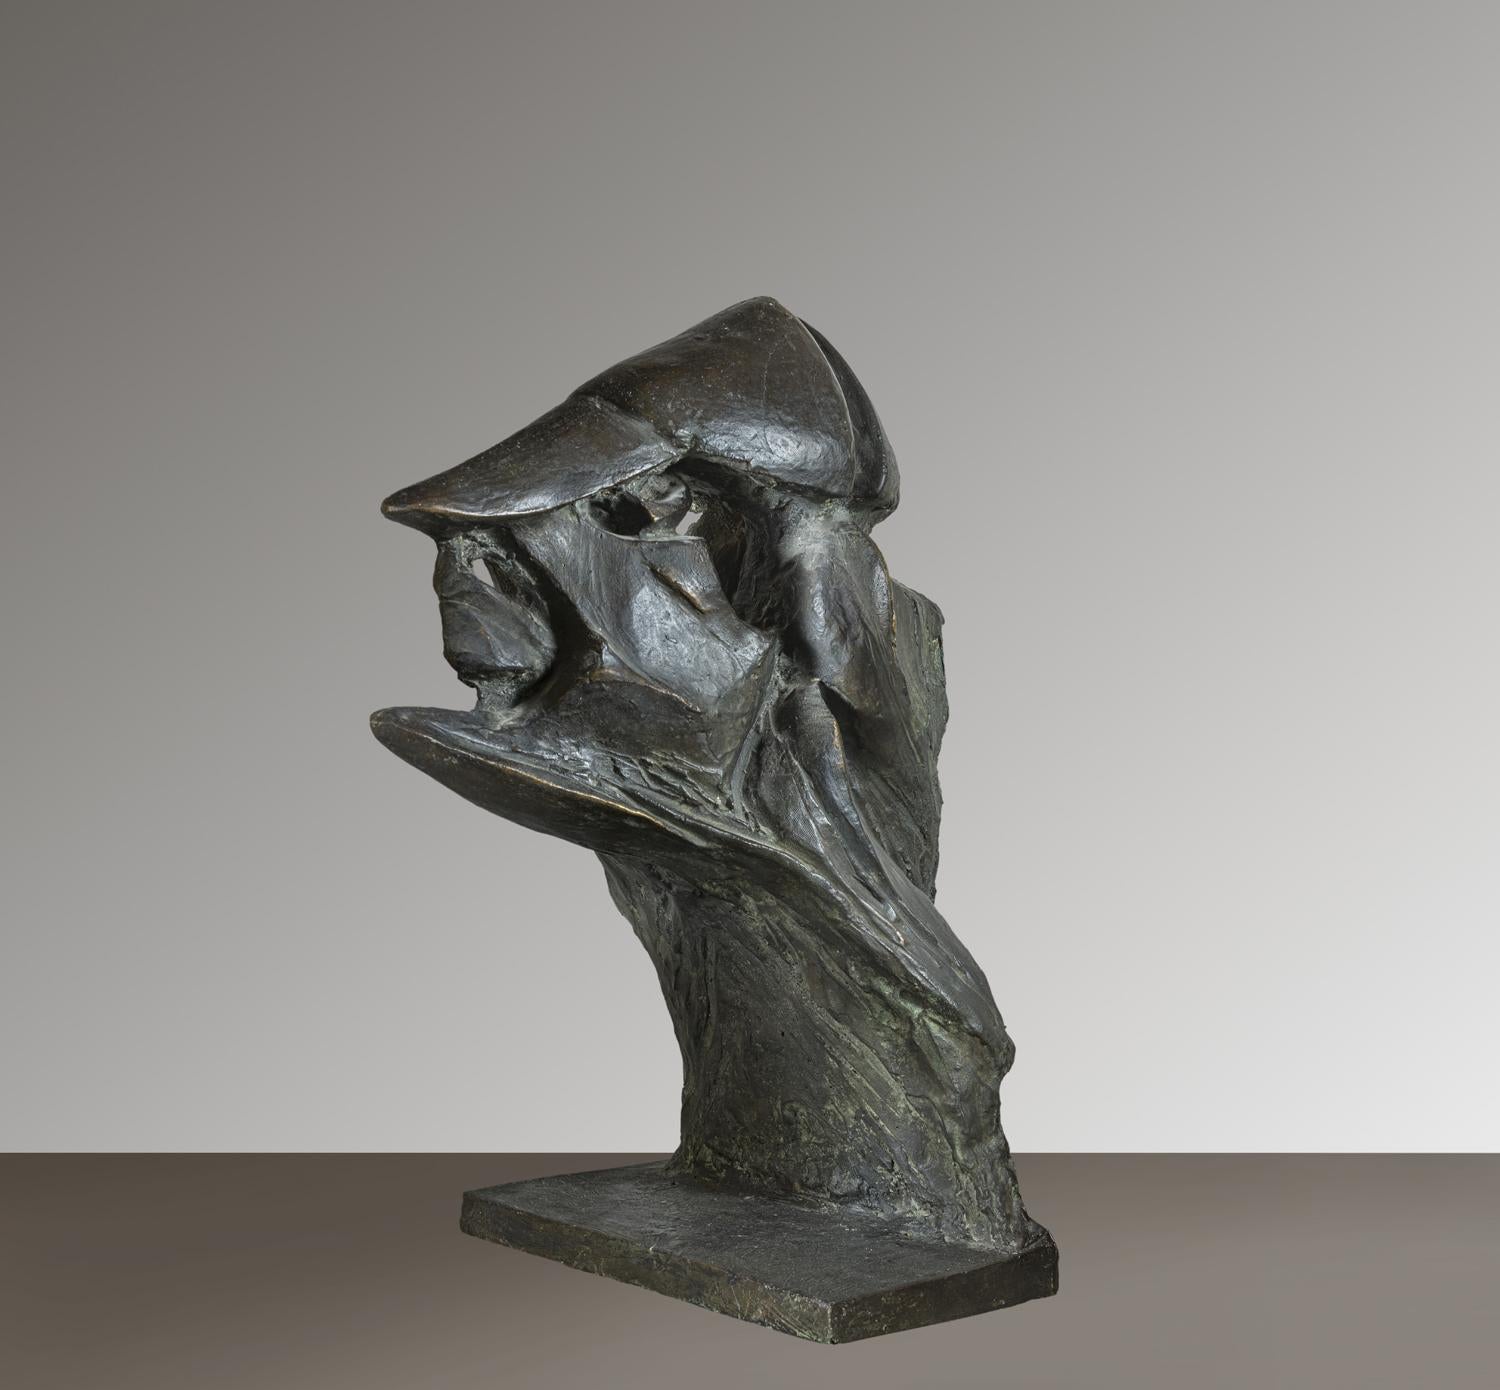 Maria Chiaromonte Figurative Sculpture - Scultura figurativa astratta futurista in bronzo 